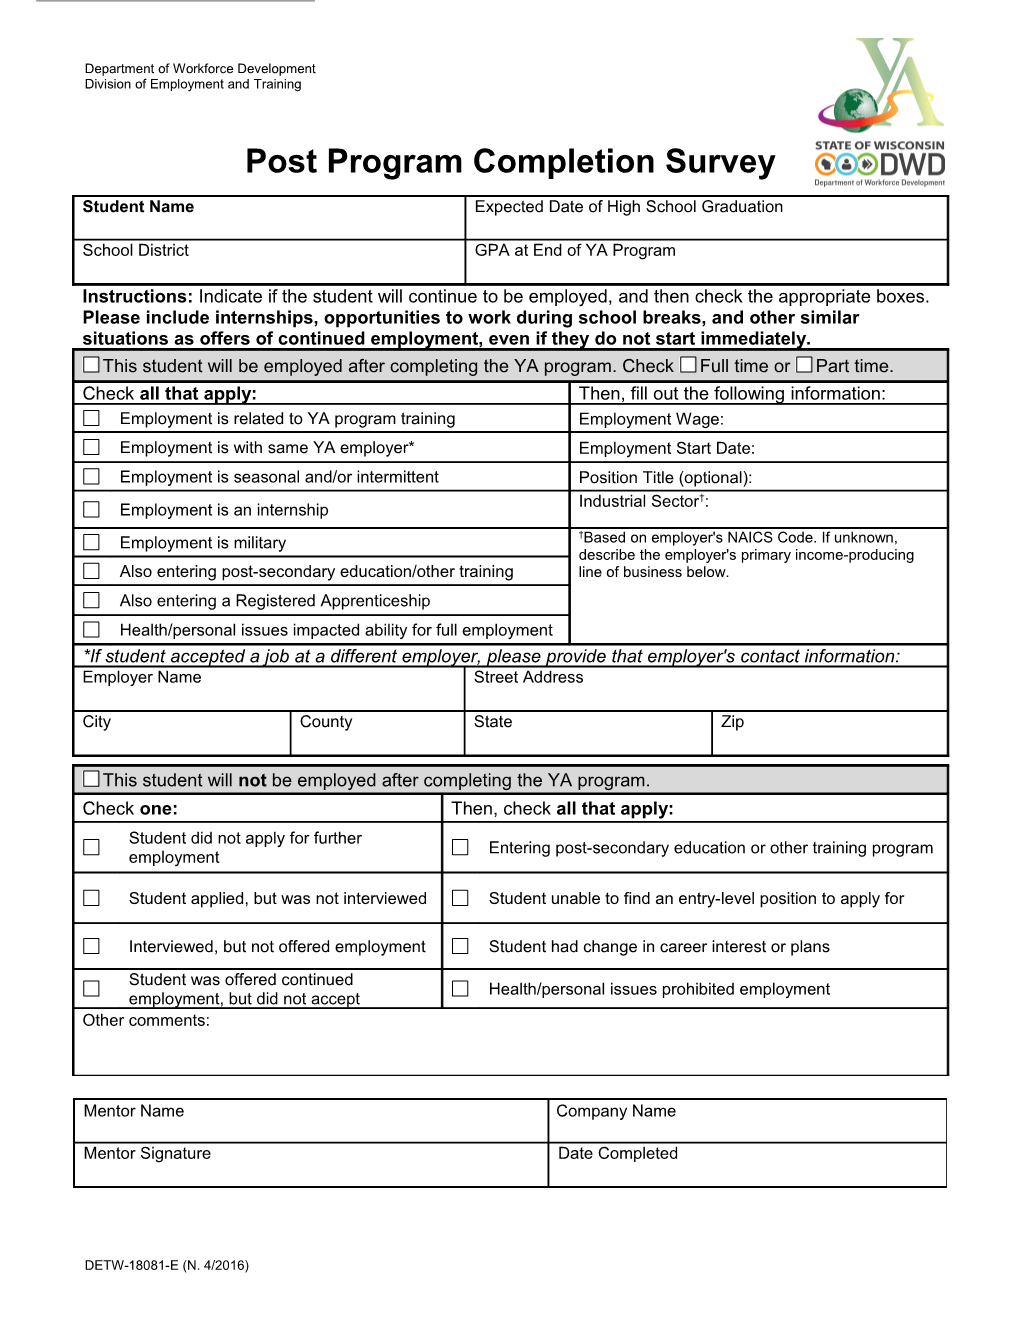 DETW-18081-E, Post Program Completion Survey